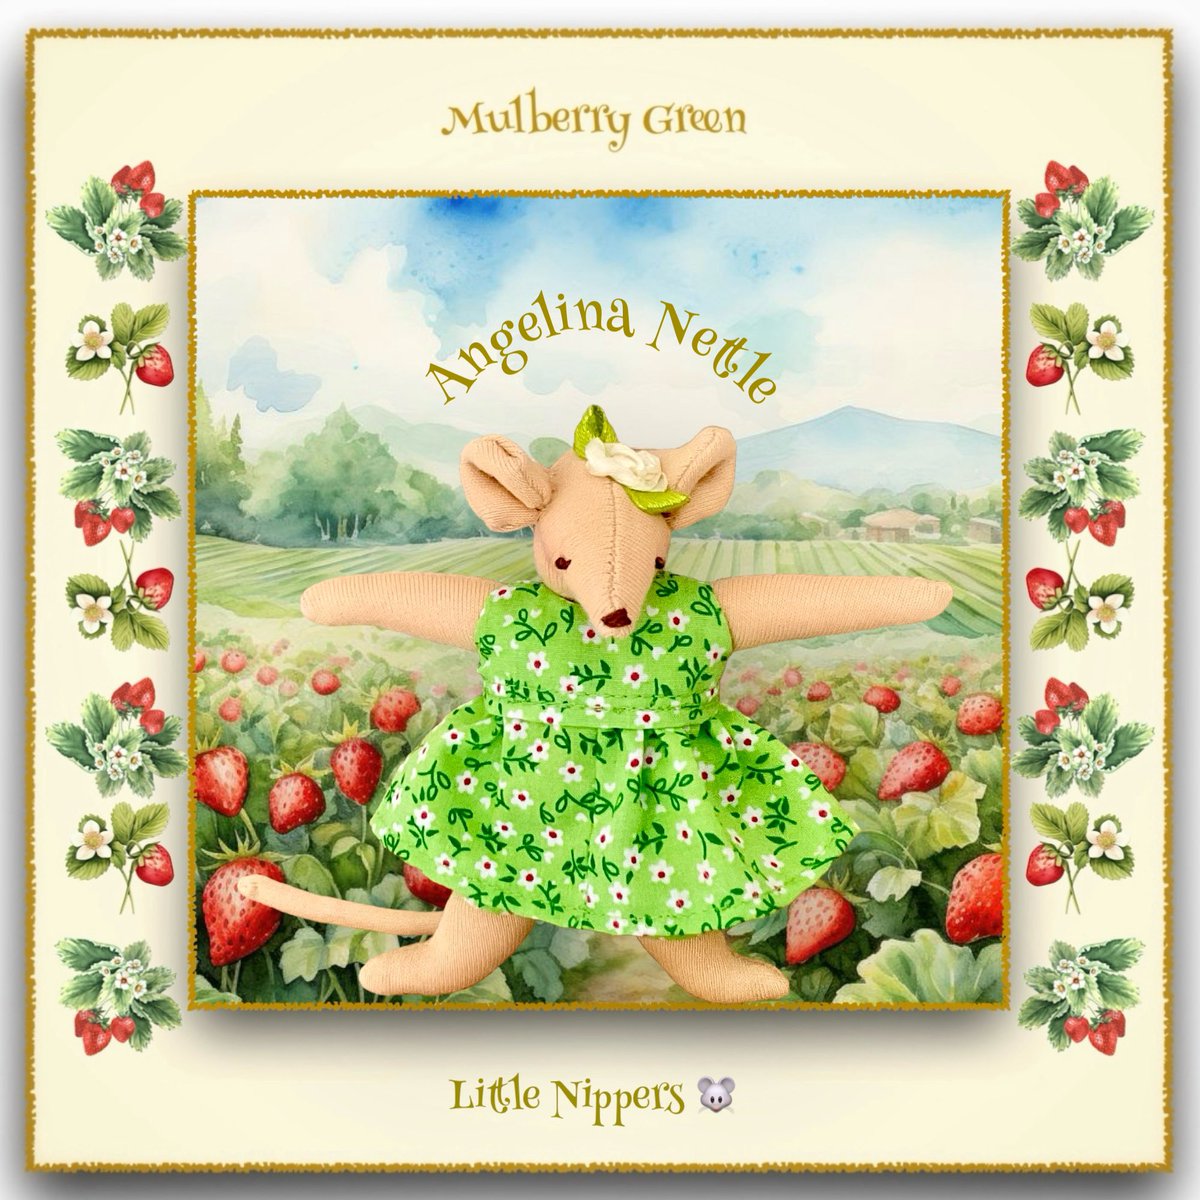 Angelina Nettle - a Little Nipper from Mulberry... - Folksy folksy.com/items/8344438-… #newonfolksy